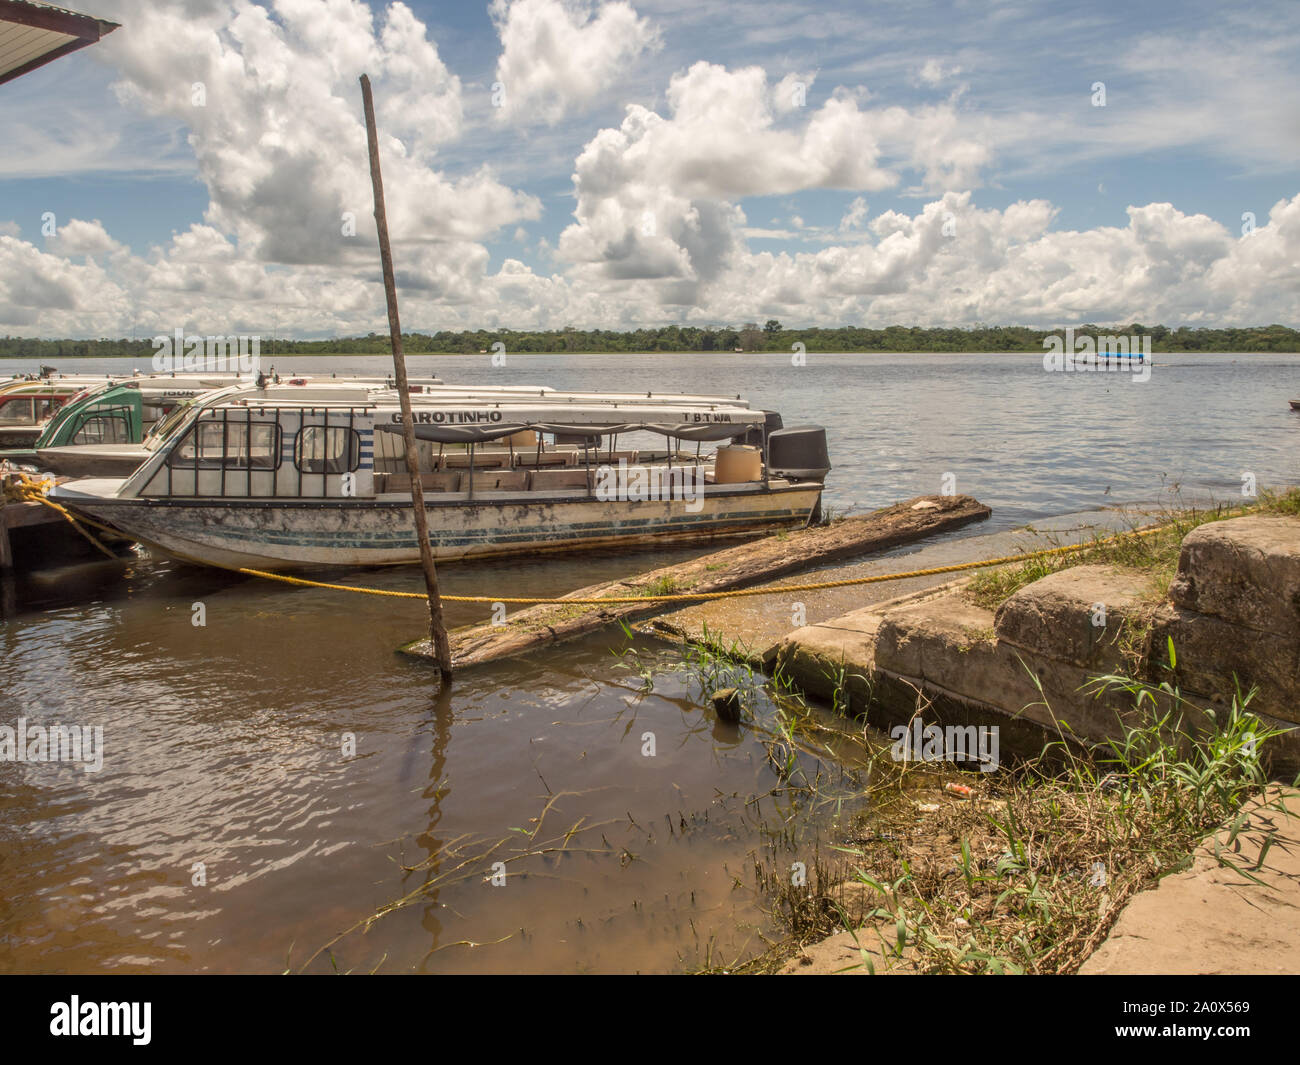 Benjamin Constant, le Brésil - 10 mai 2016 : bateau rapide dans le port d'Amazone. L'Amérique du Sud. Amazon River. Tres fronteras. Forêt de pluie Amazoni Banque D'Images